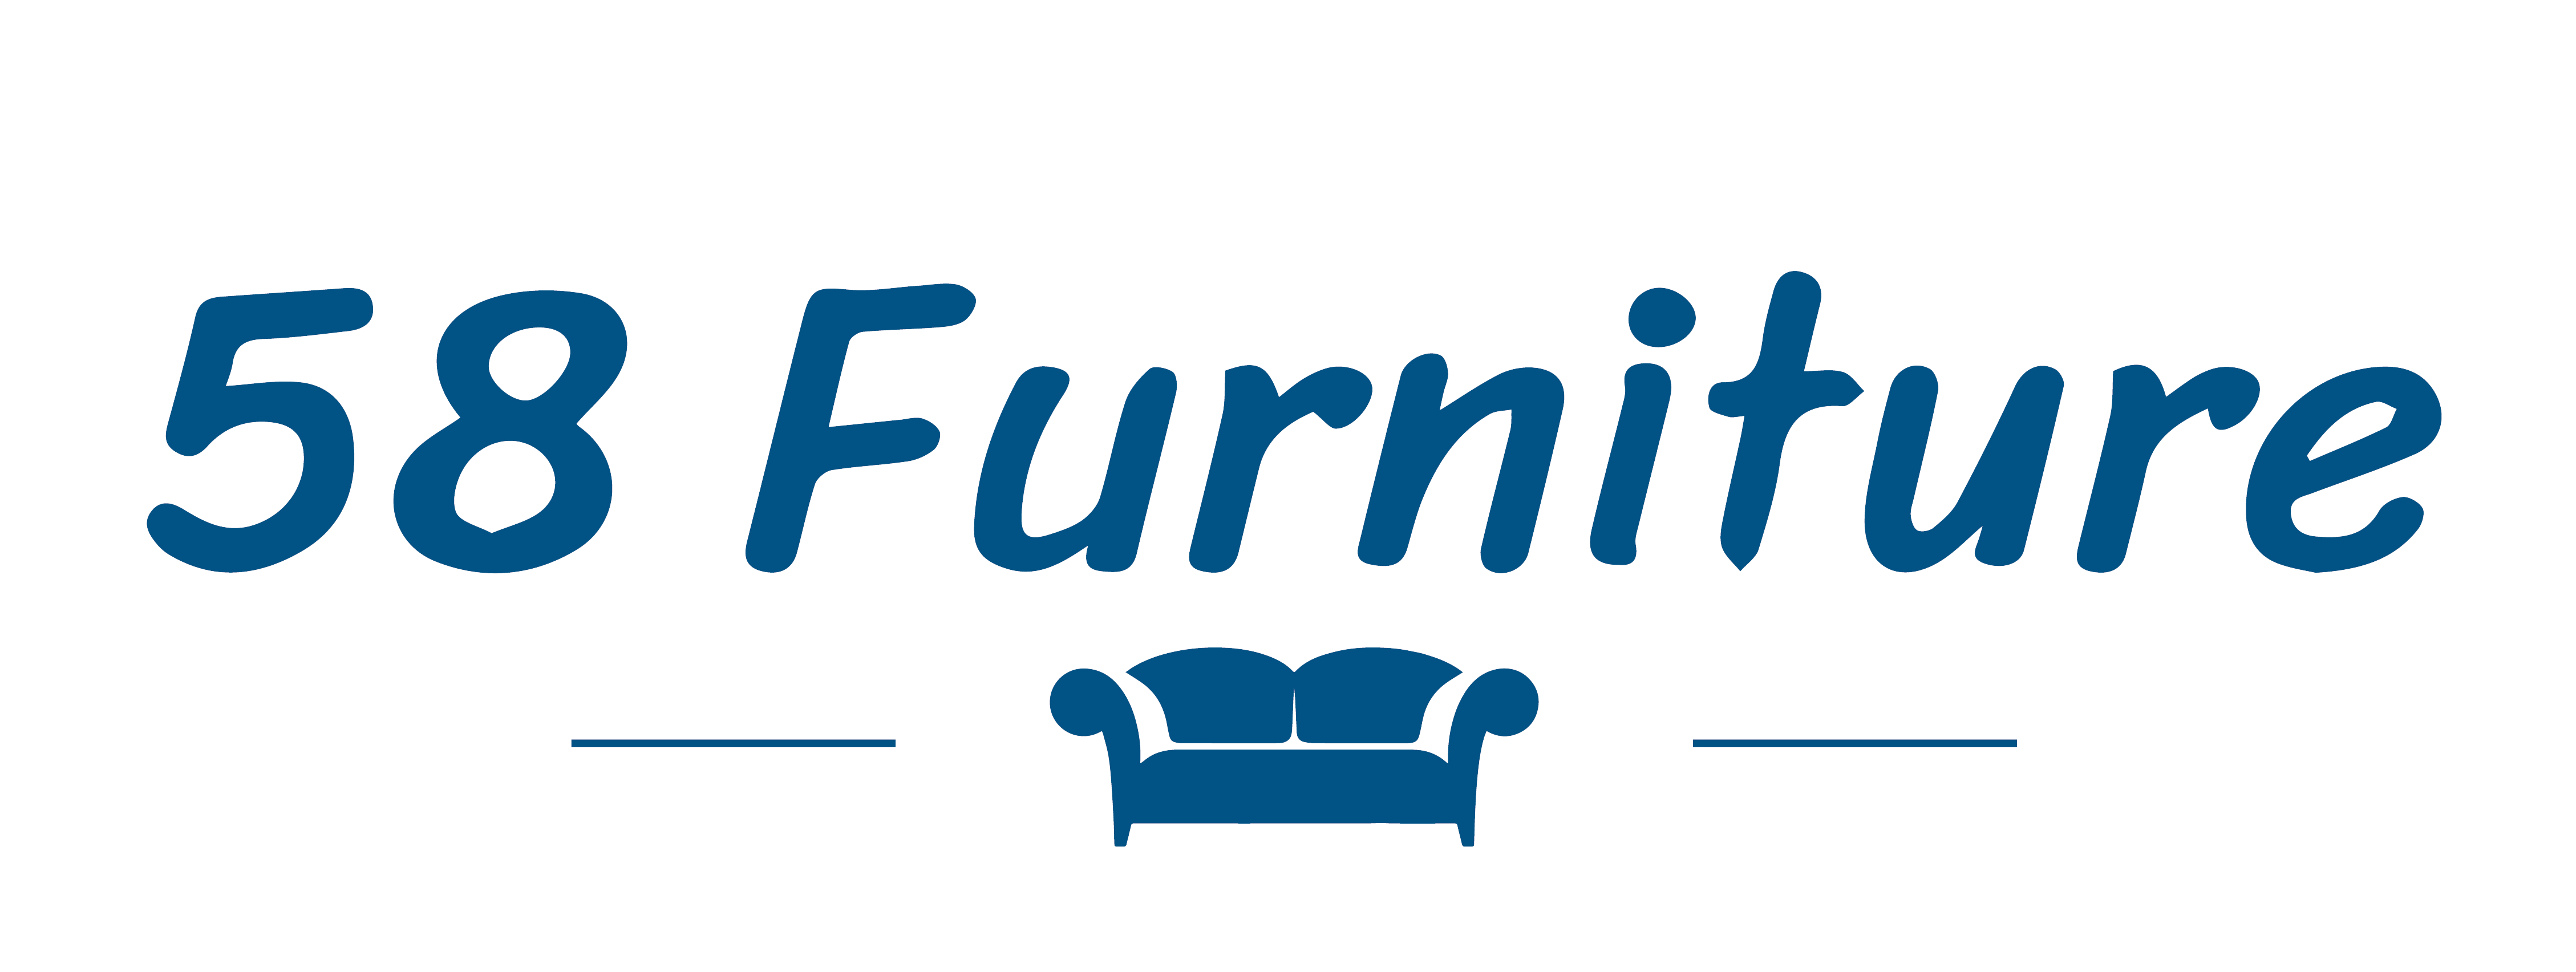 58 furniture